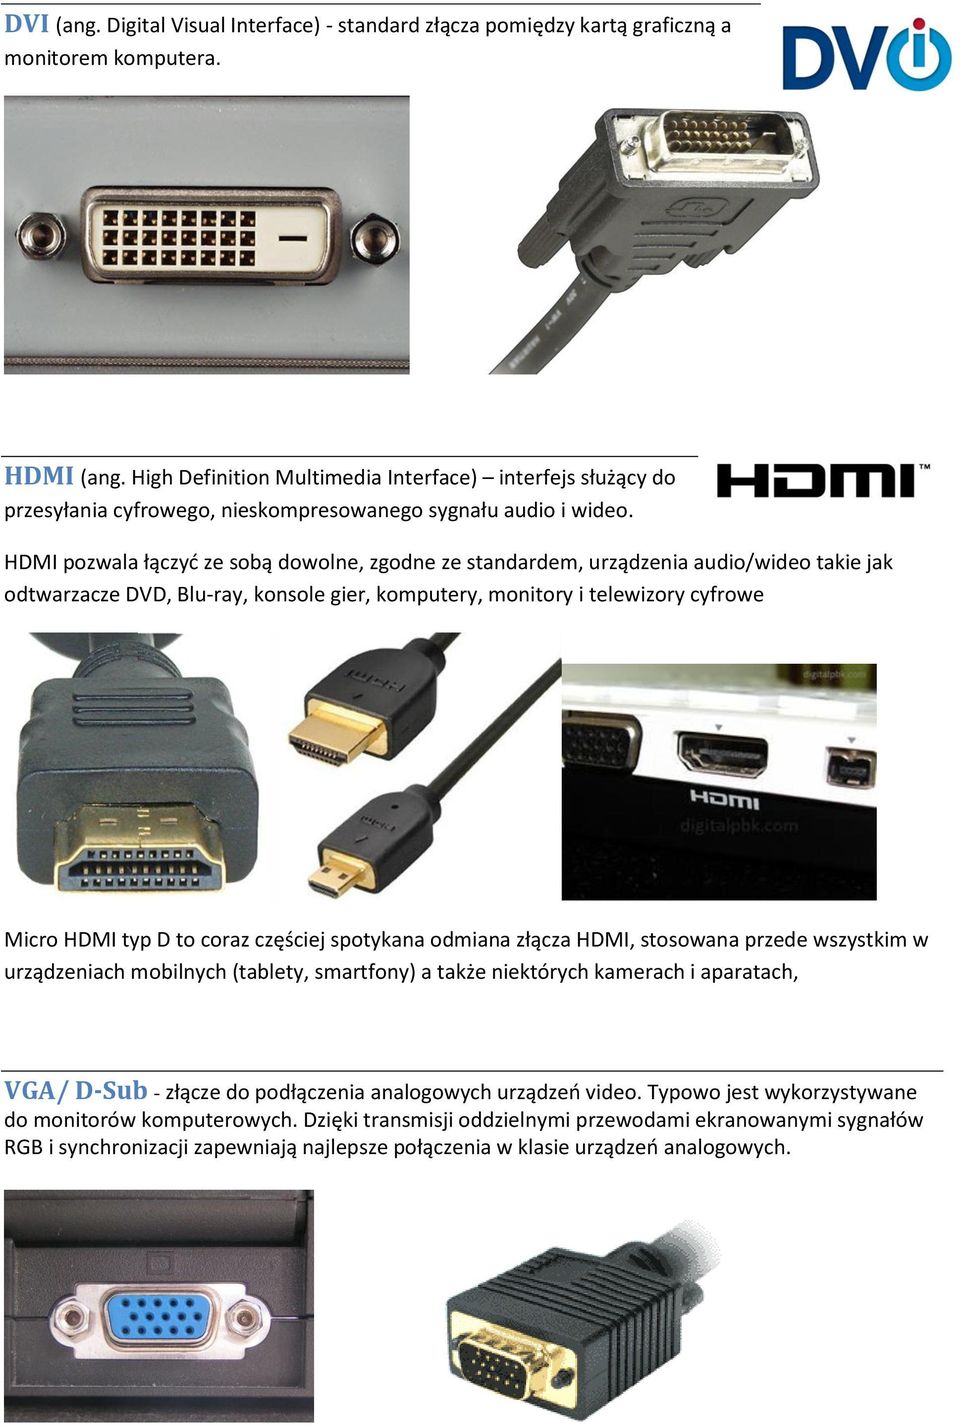 HDMI pozwala łączyd ze sobą dowolne, zgodne ze standardem, urządzenia audio/wideo takie jak odtwarzacze DVD, Blu-ray, konsole gier, komputery, monitory i telewizory cyfrowe Micro HDMI typ D to coraz